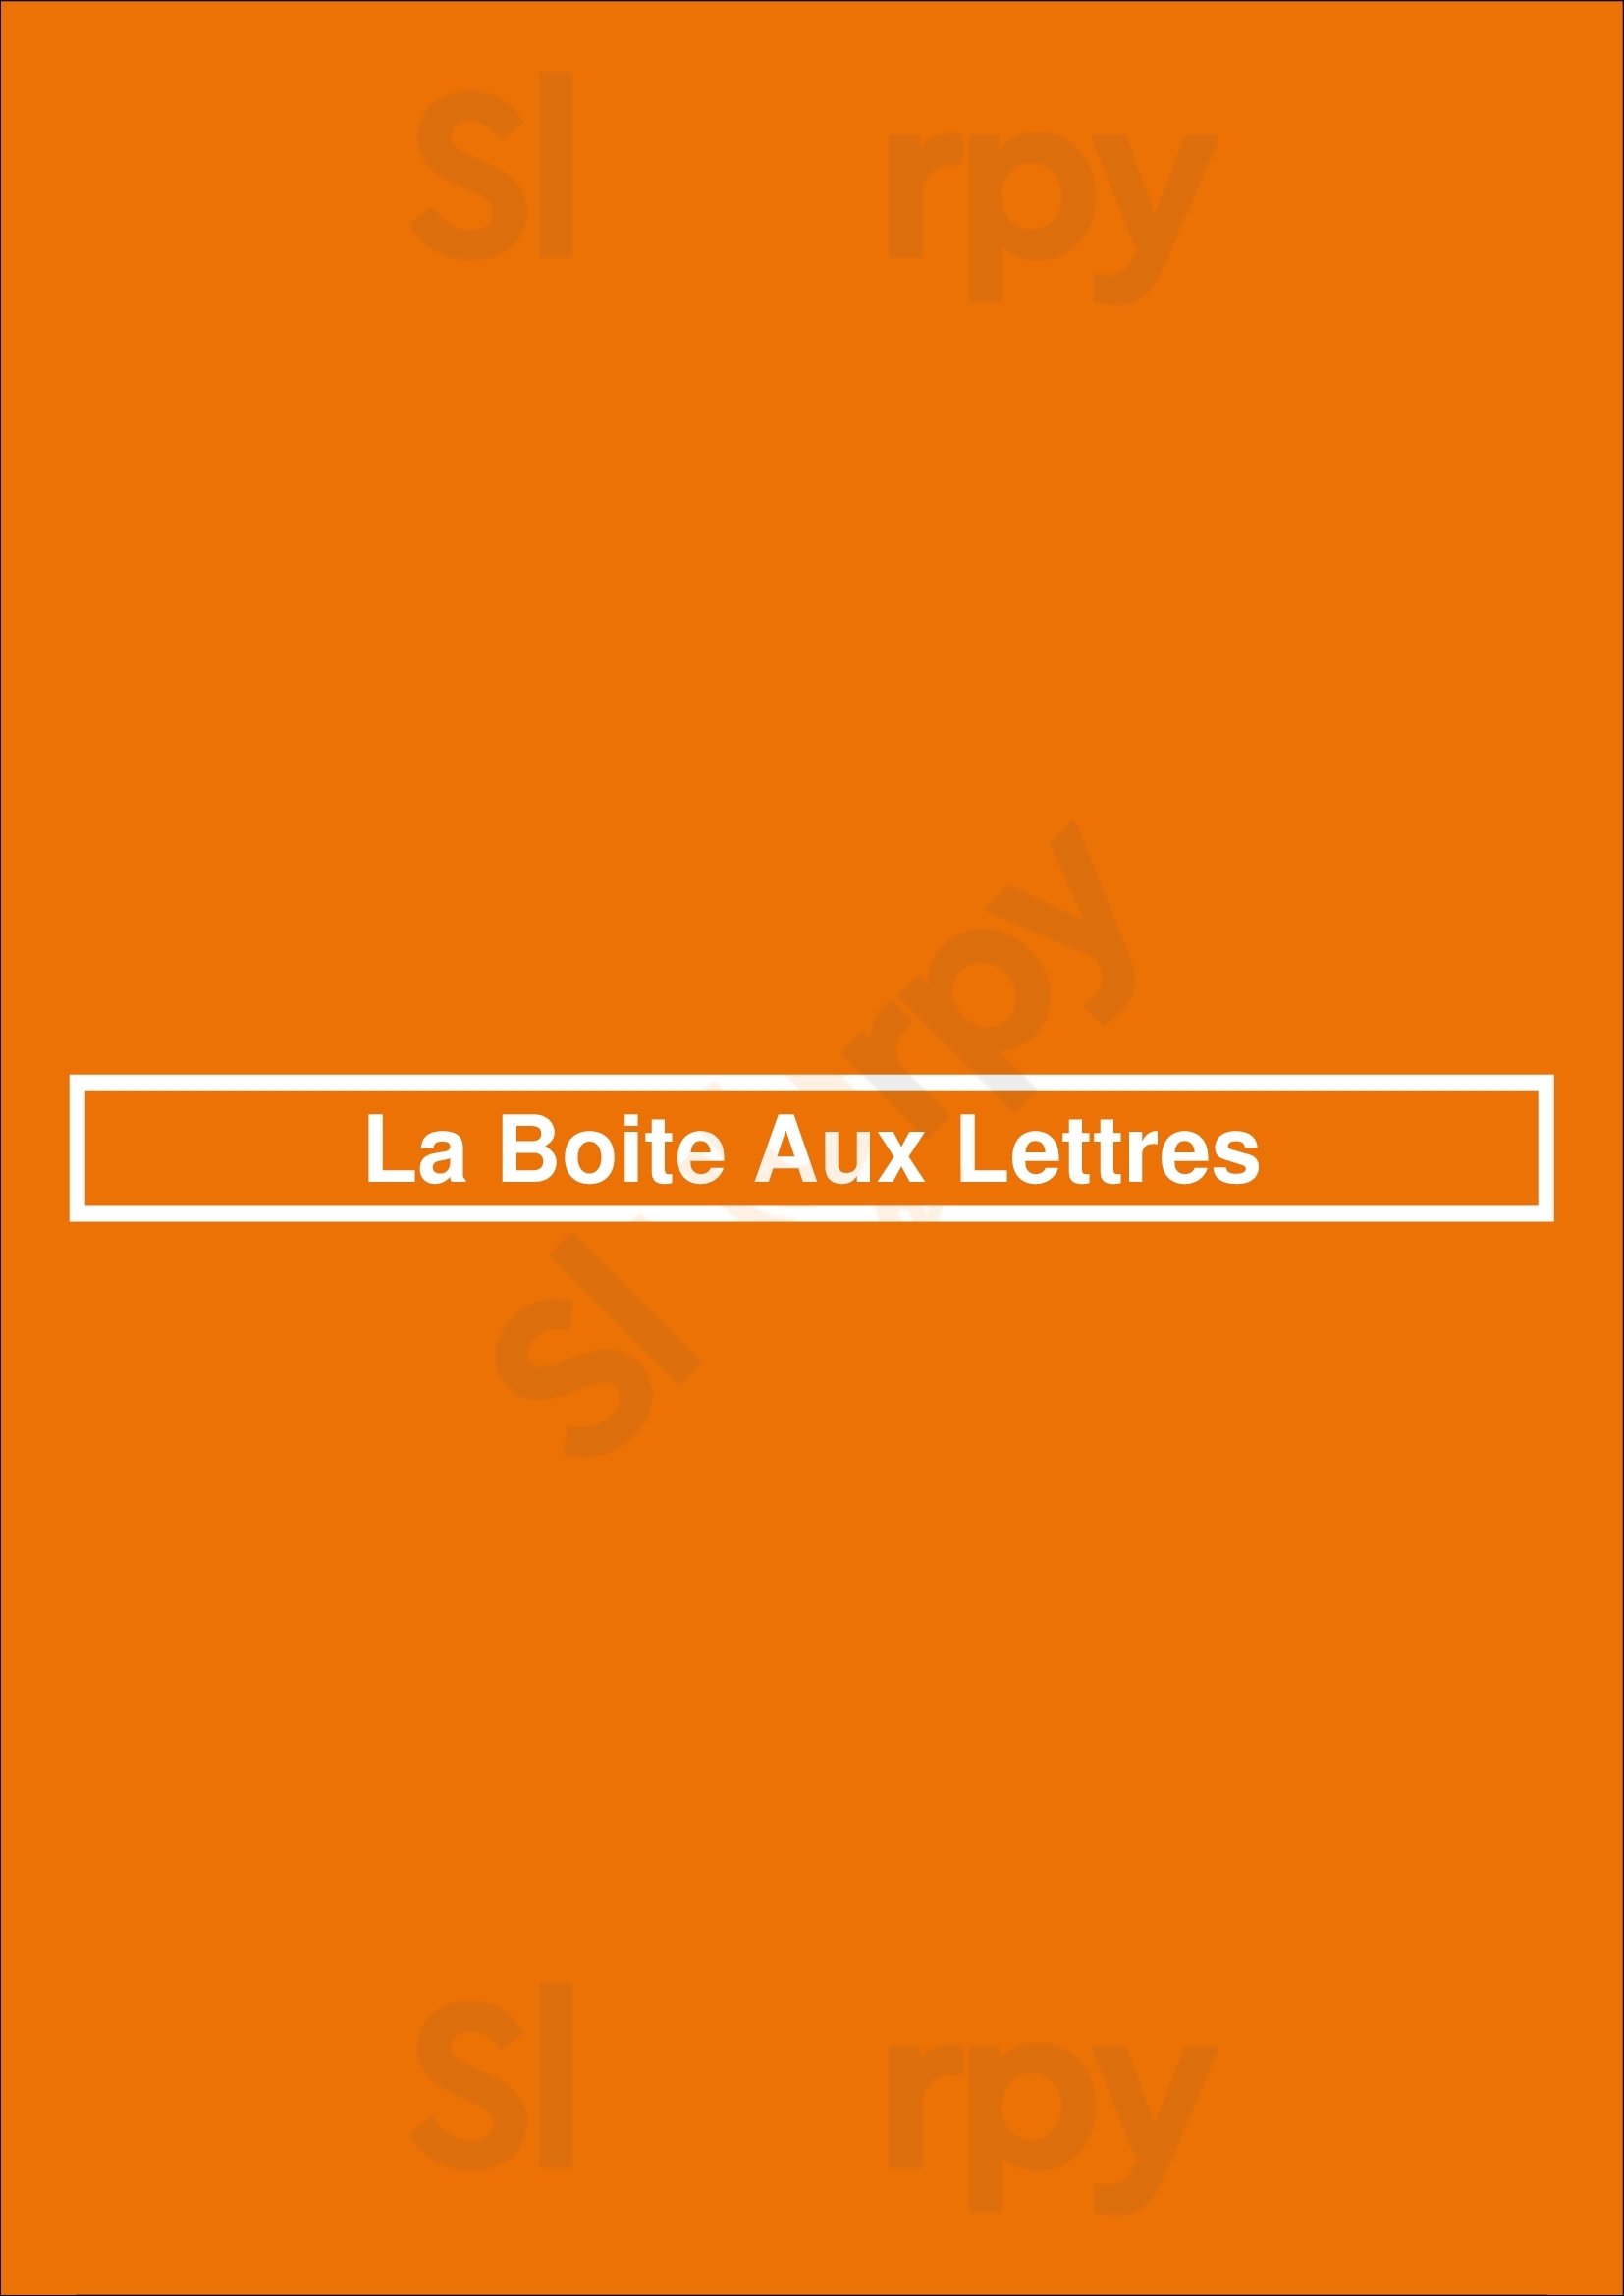 La Boite Aux Lettres Paris Menu - 1